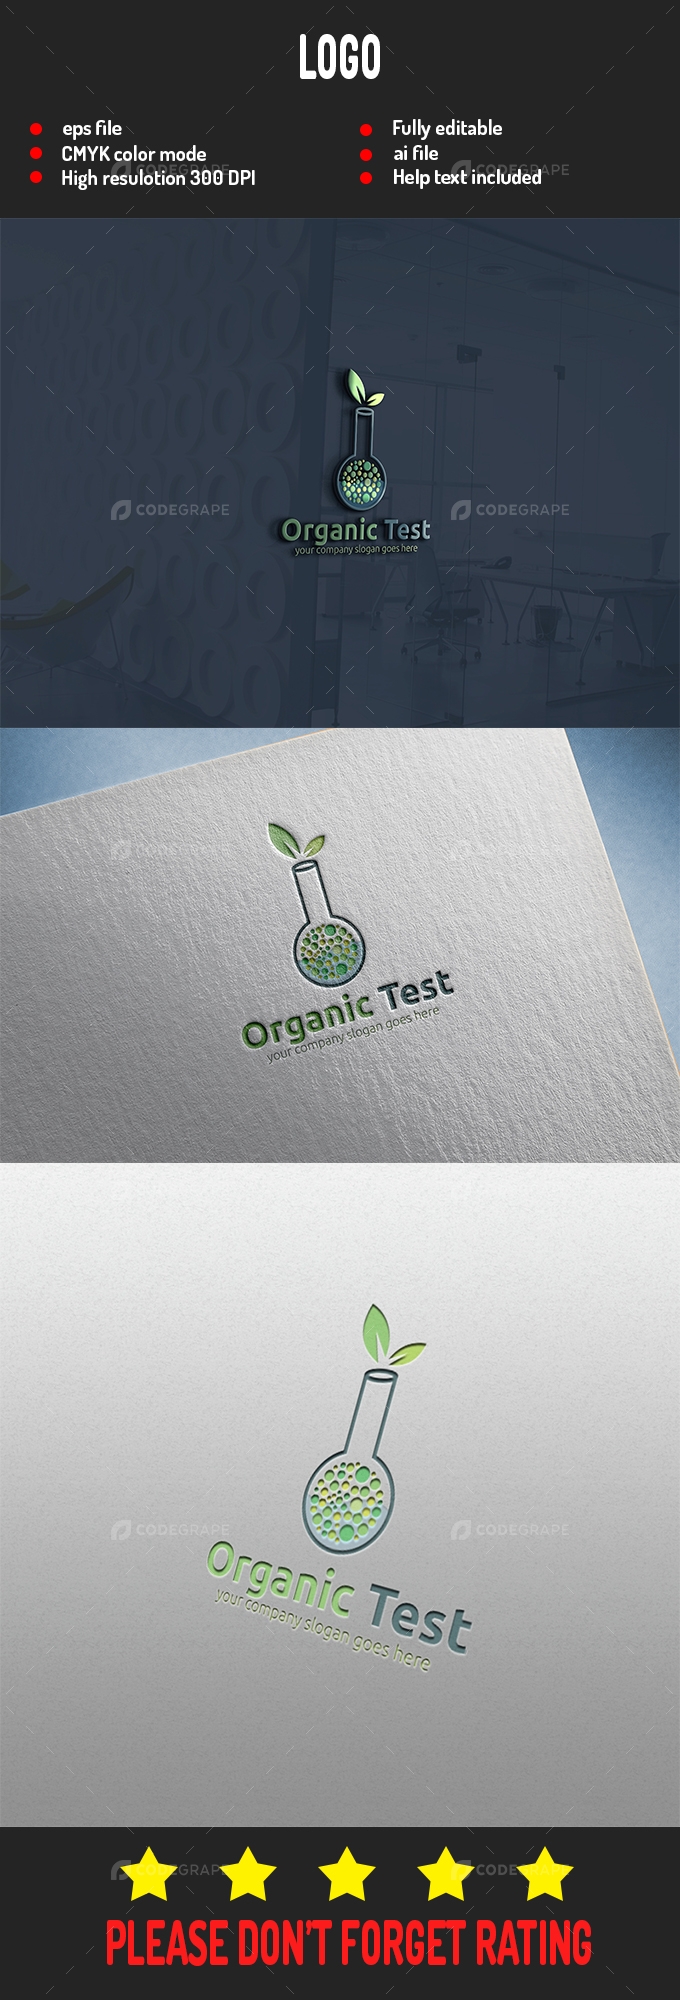 Organic Test